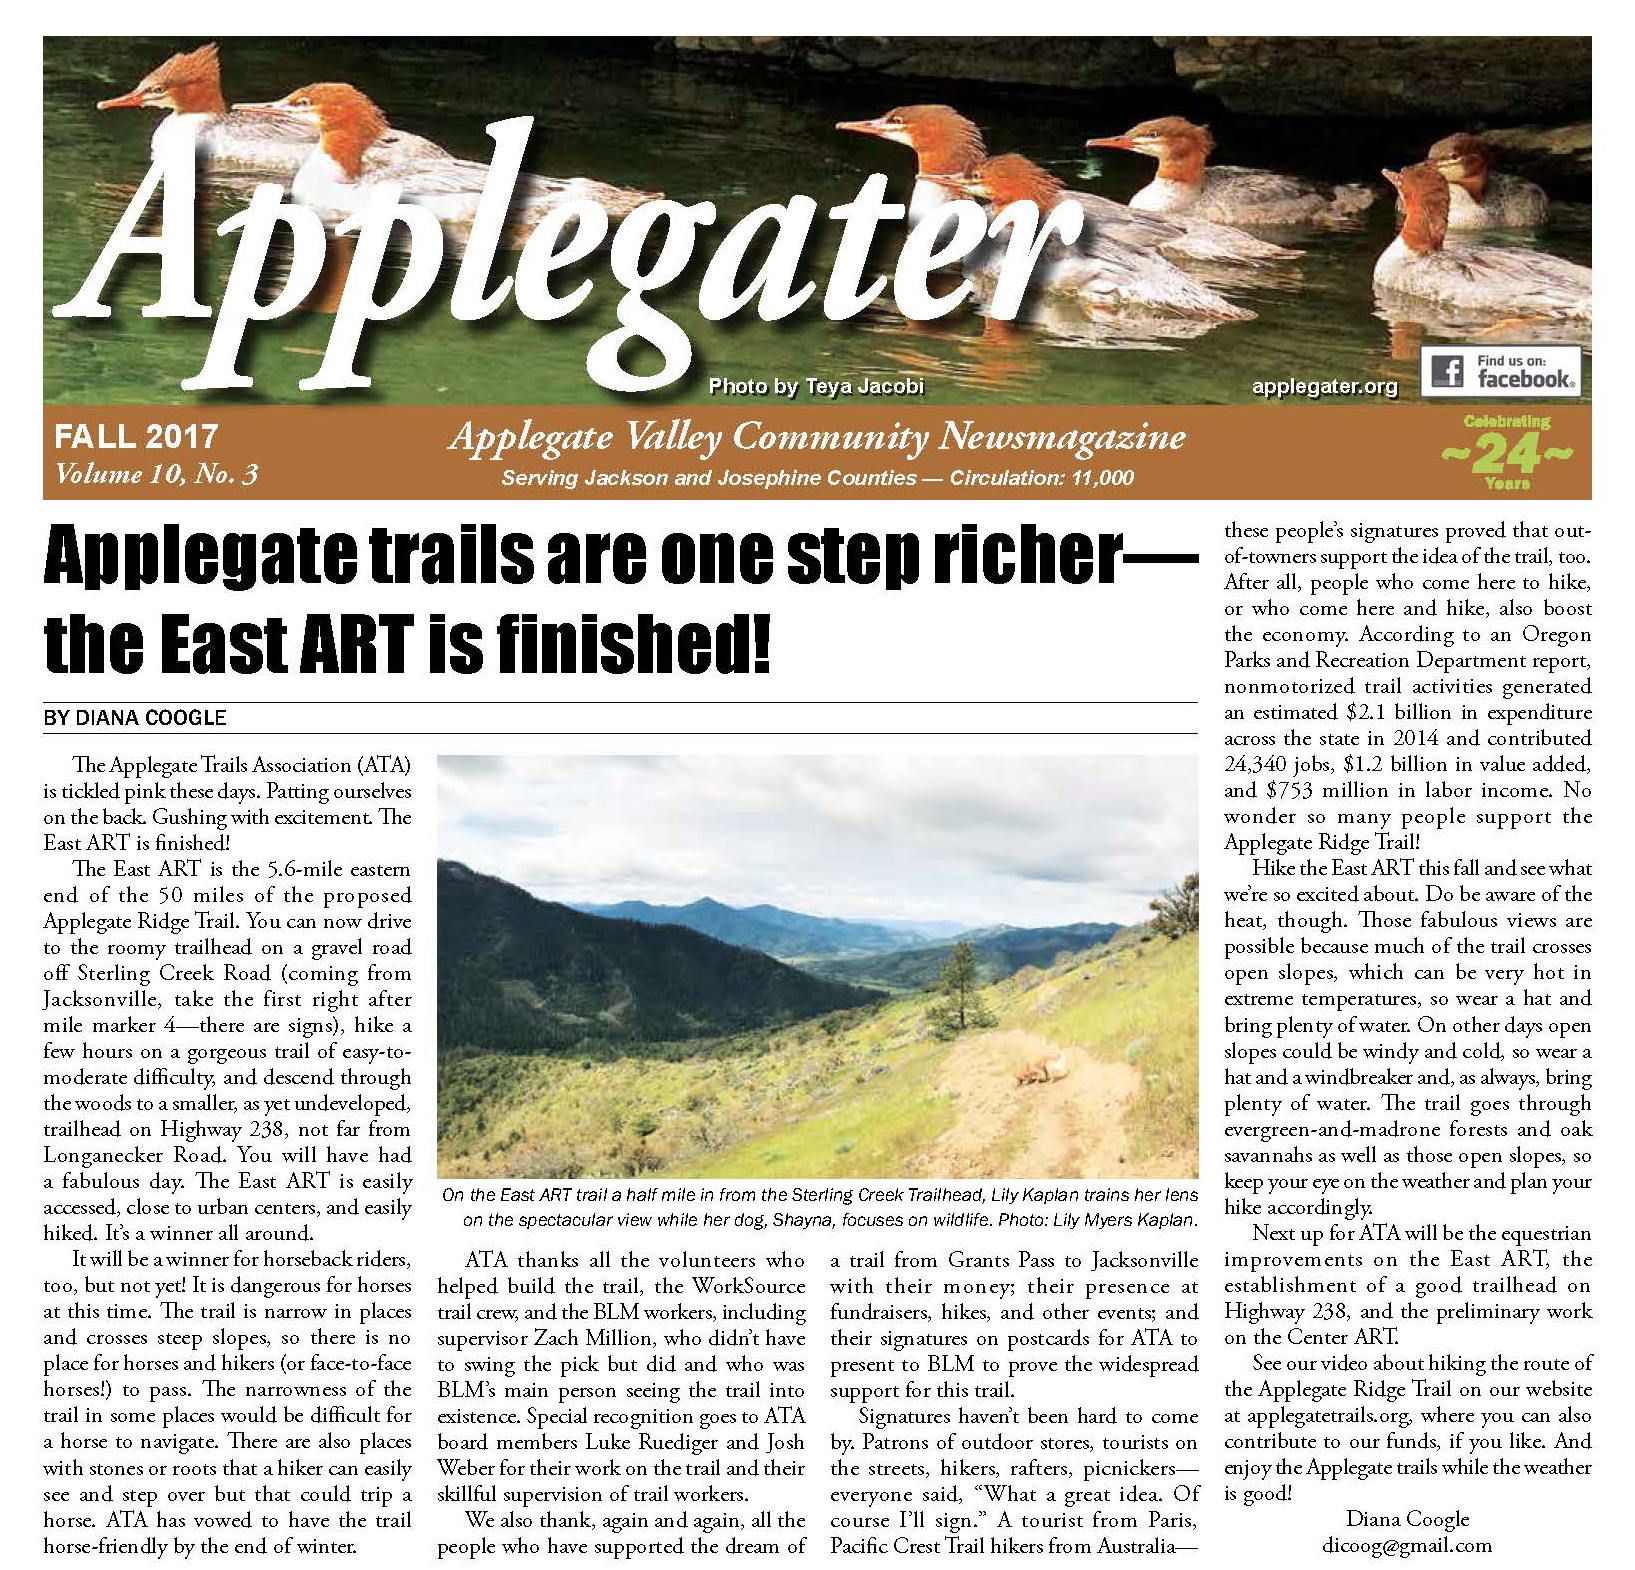 Applegater Newsmagazine delivers!